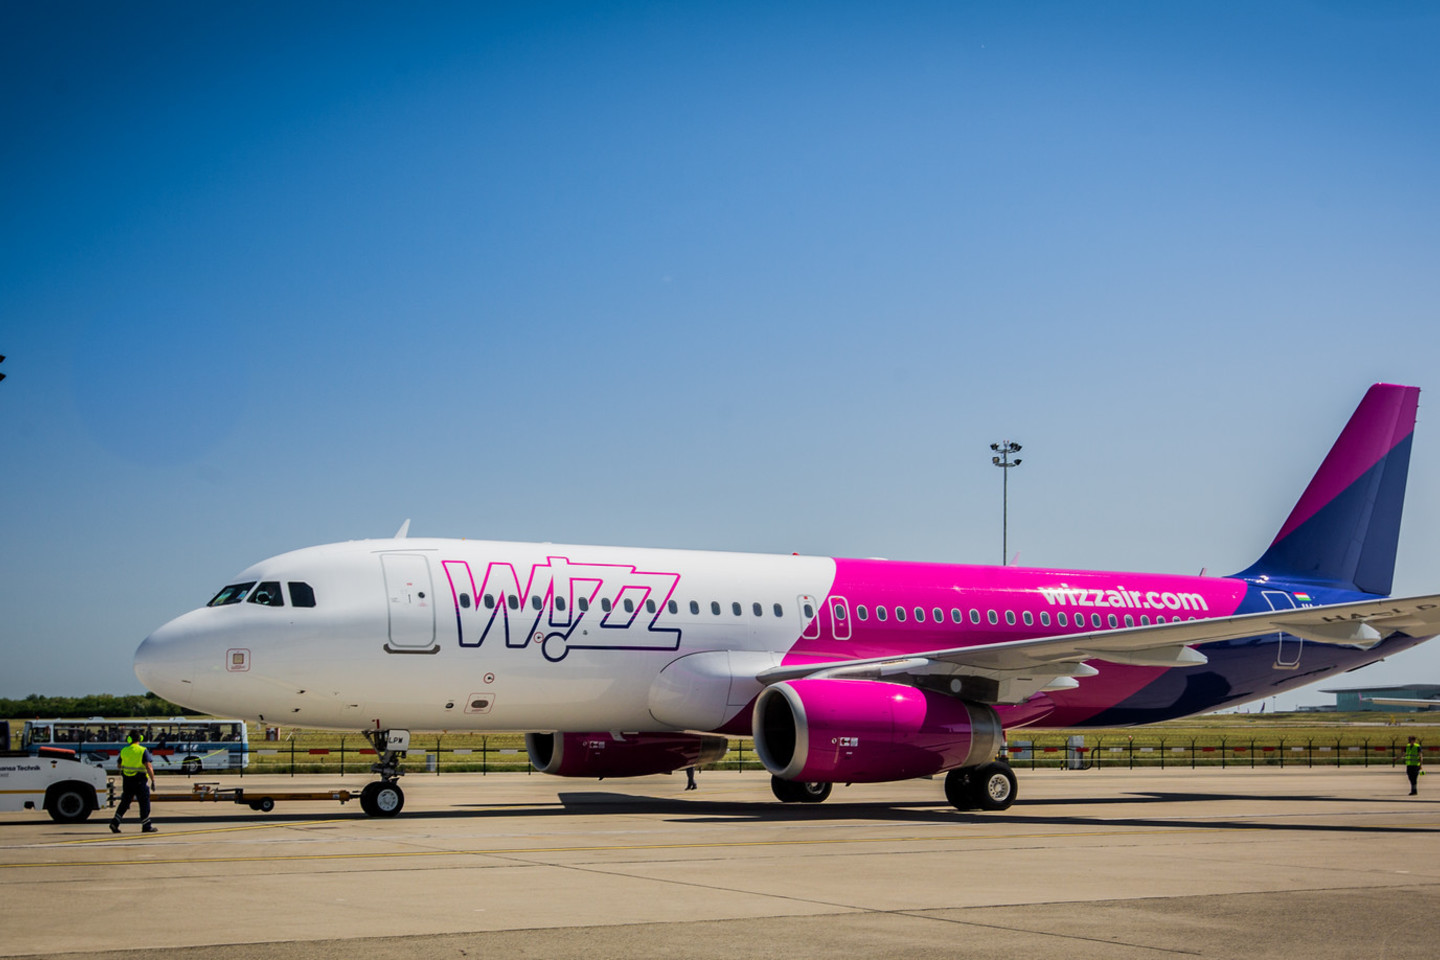  Naujasis maršrutas papildo neseniai „Wizz Air“ paskelbtas dvi naujas kryptis iš Vilniaus: dar šiais metais žemų sąnaudų oro linijų bendrovė iš Lietuvos sostinės pradės skrydžius į Agadirą Maroke bei Gdanską Lenkijoje. <br> Bendrovės nuotr.